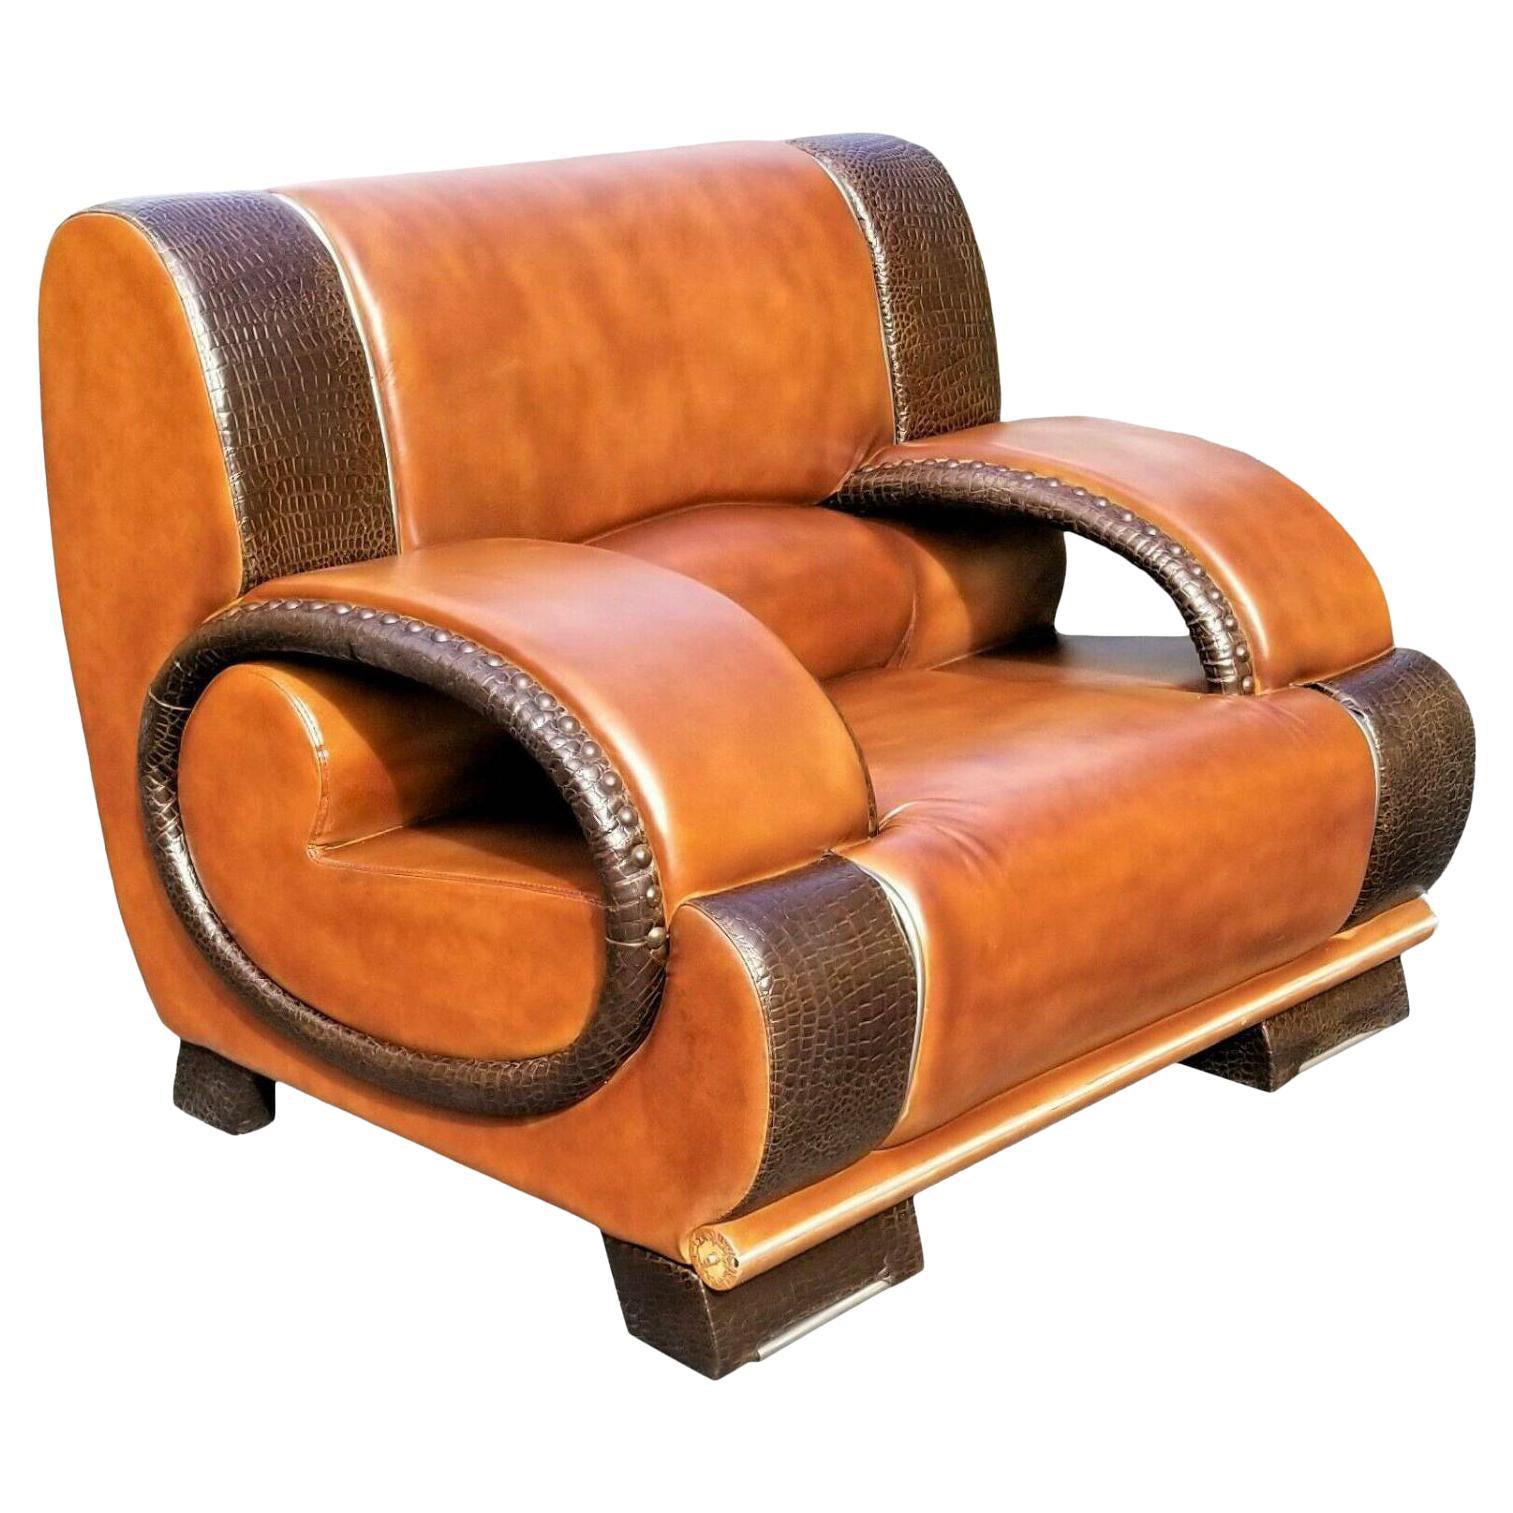 Custom Made Italian Leather and Crocodile Lounge Chair